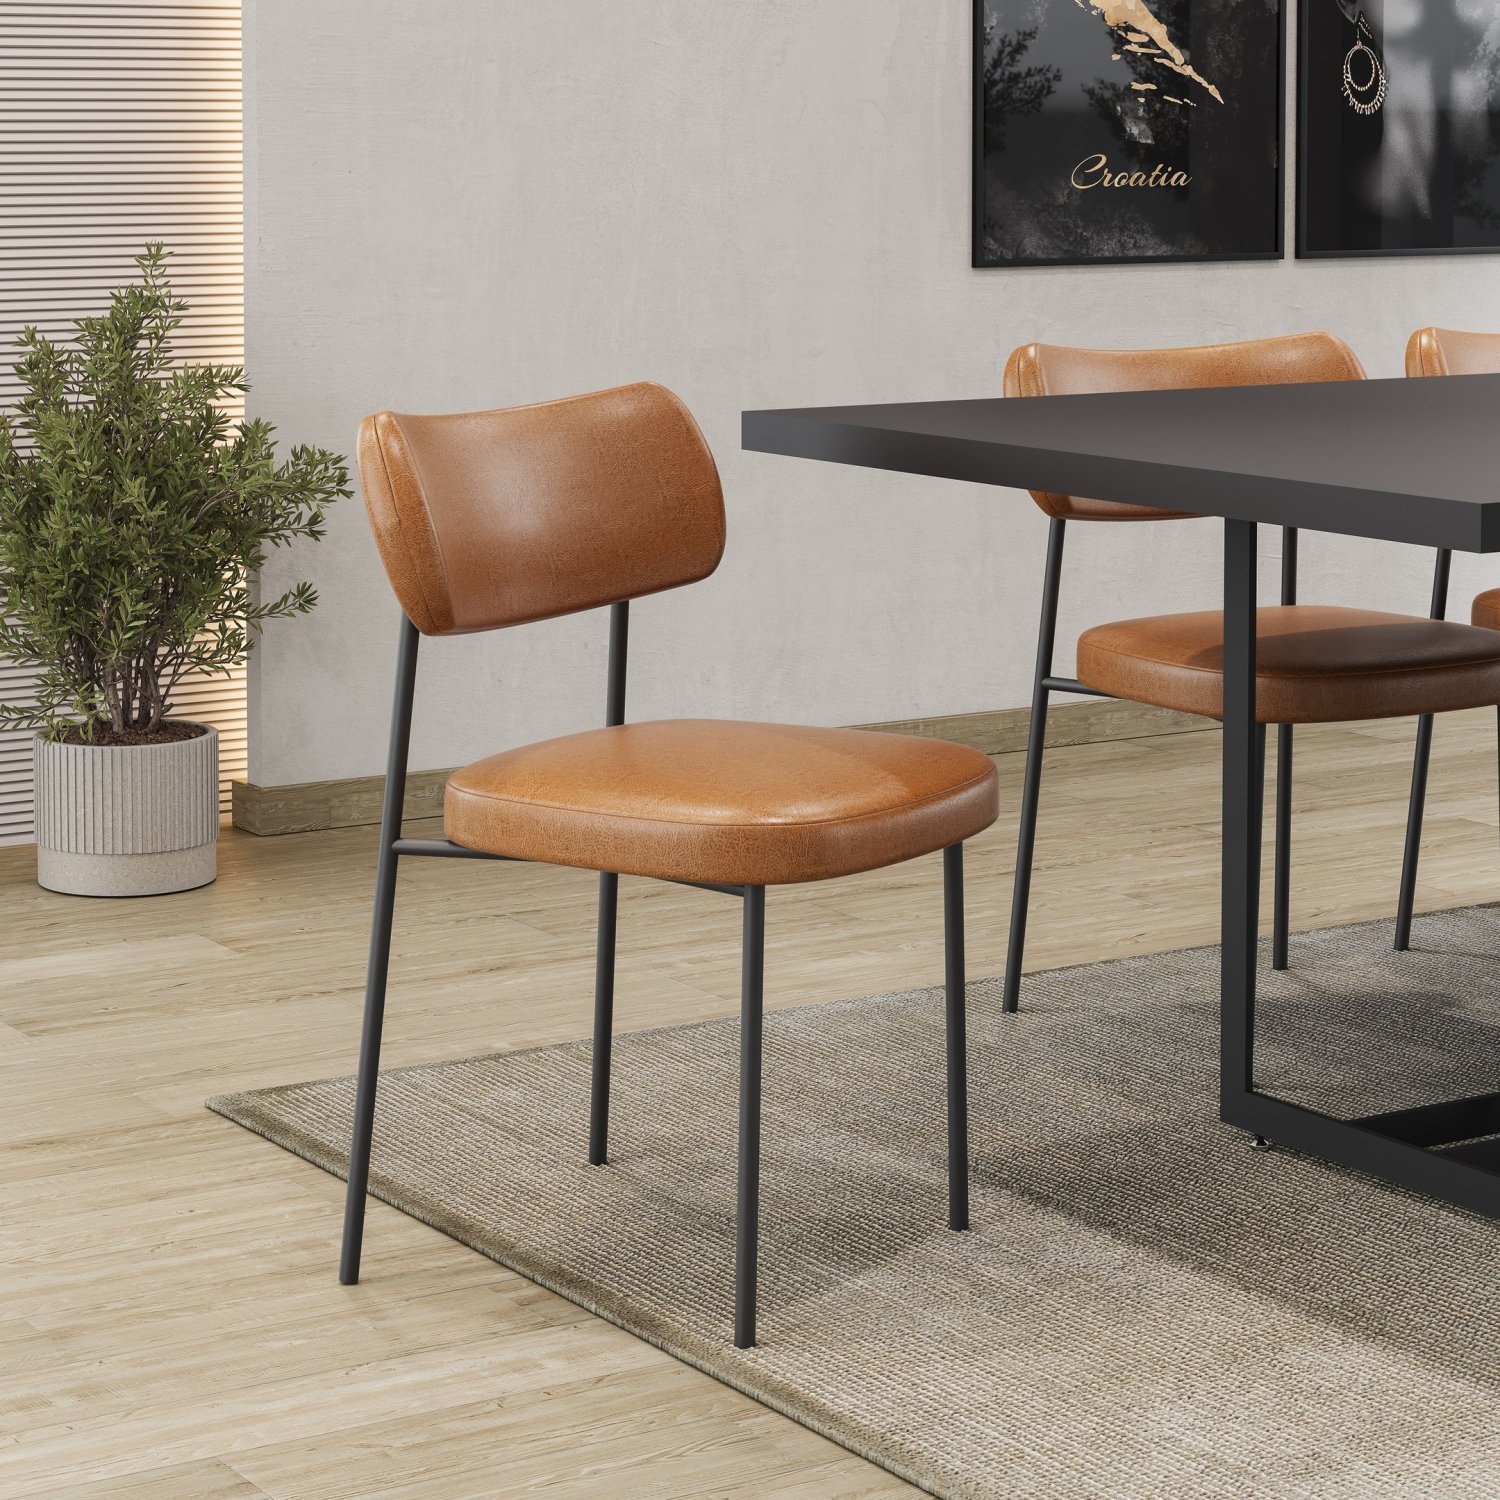 Kit 6 Cadeiras para Sala de Jantar Mona Espresso Móveis - 3